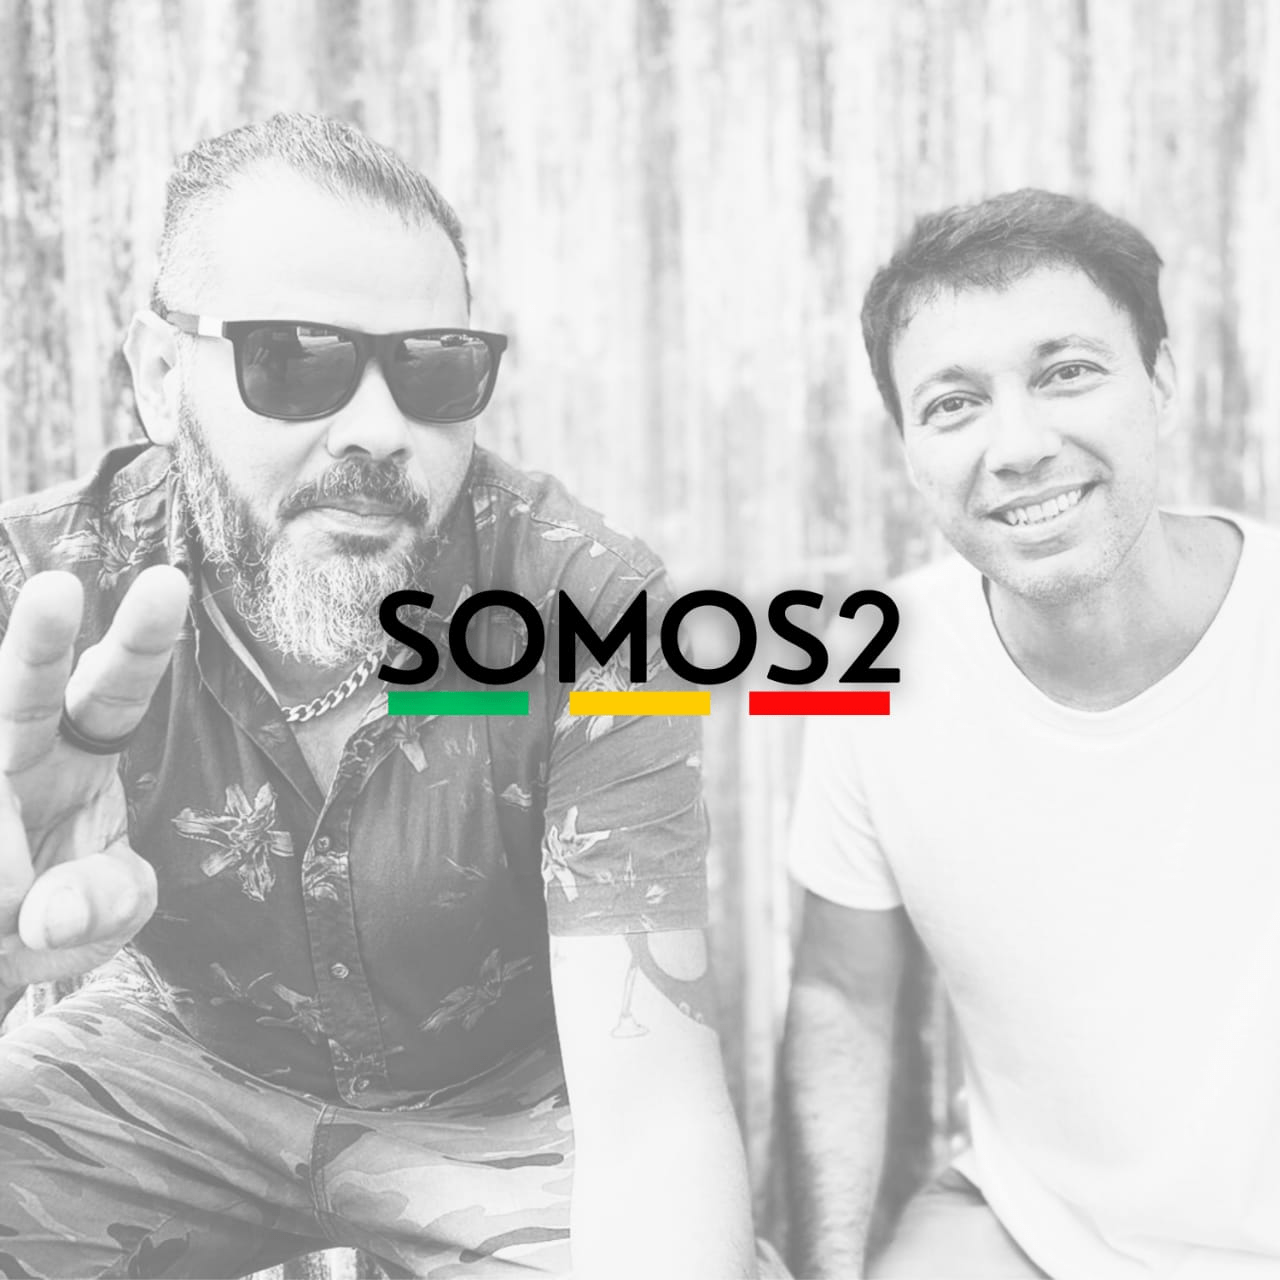 Duo SomoS2 lança álbum homônimo e conquista espaço no reggae brasileiro